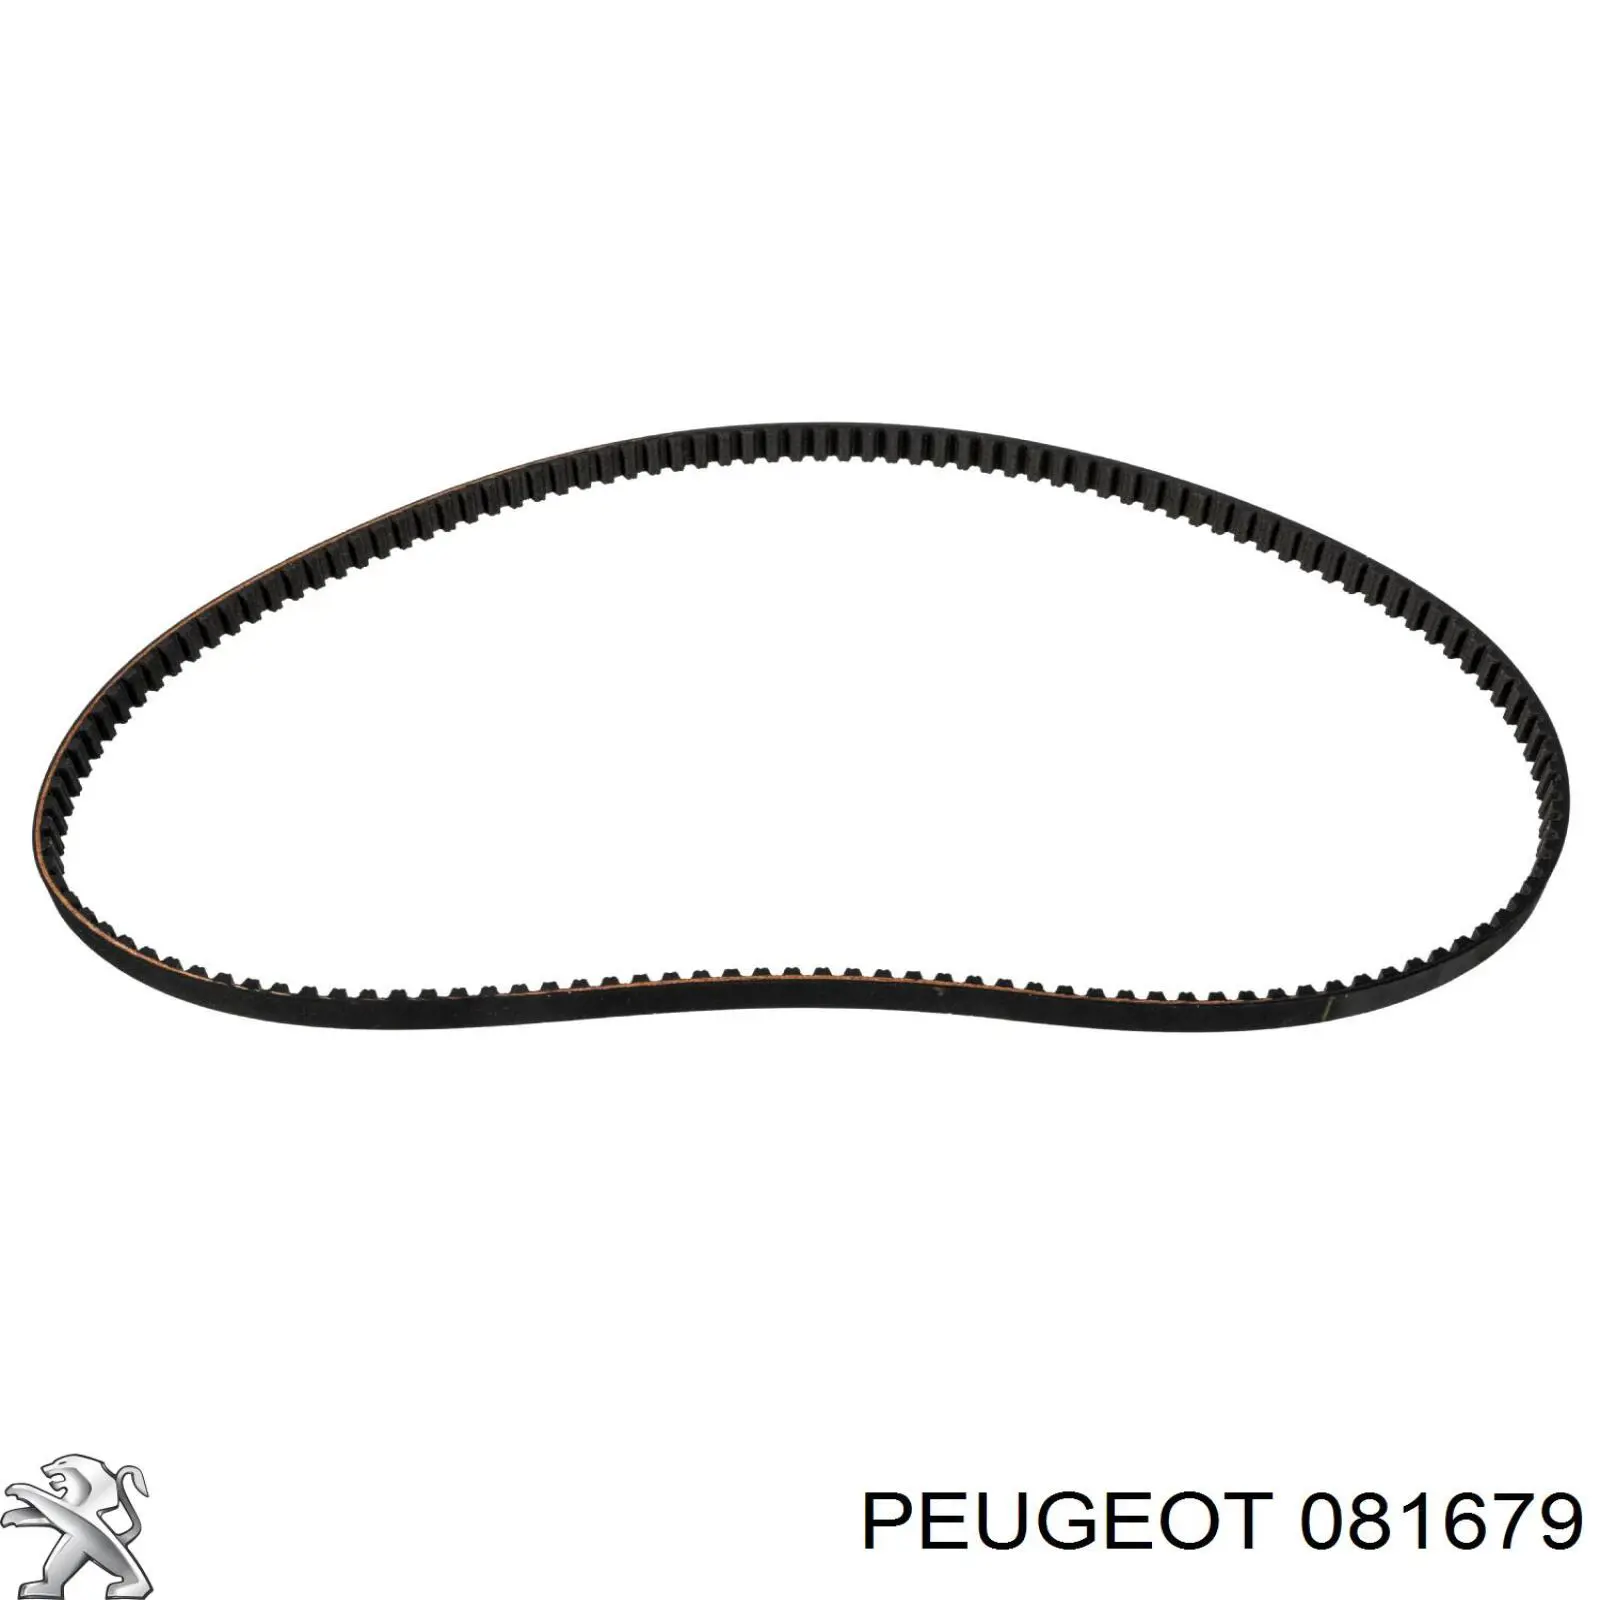 081679 Peugeot/Citroen correa distribucion